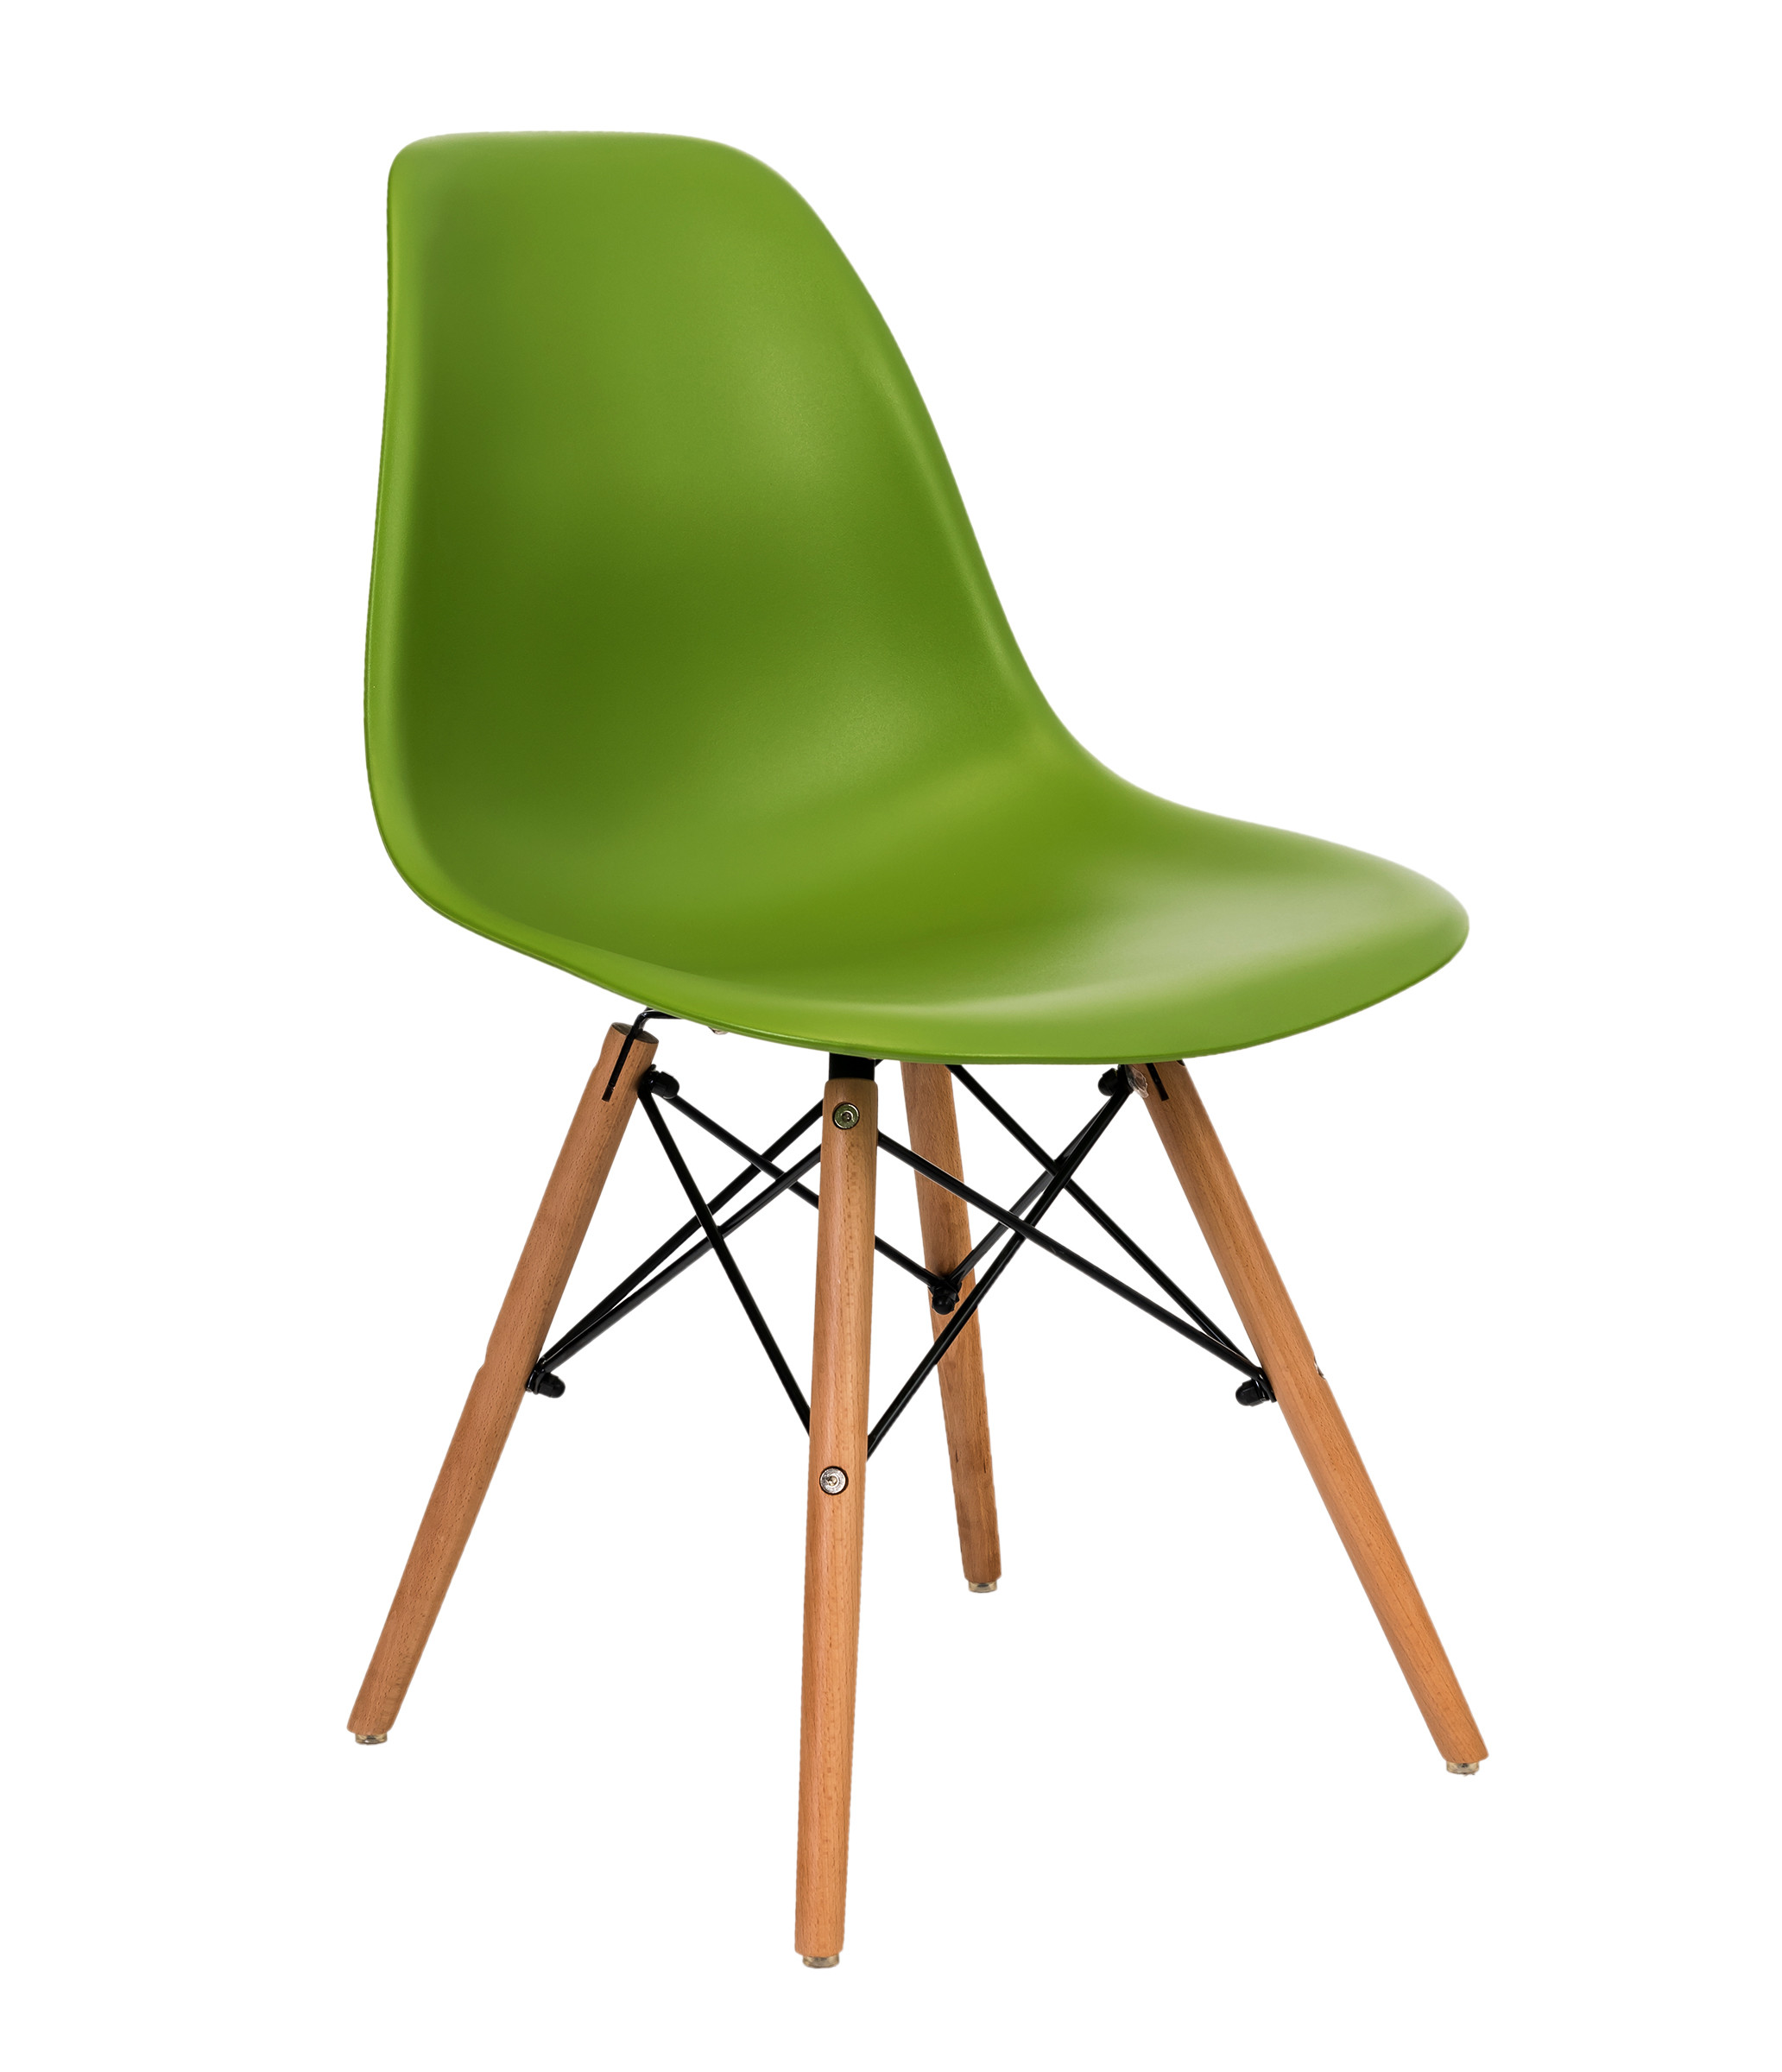 Стул-кресло Eames DSW зеленый, ножки дерево, продажа кратно 10 шт